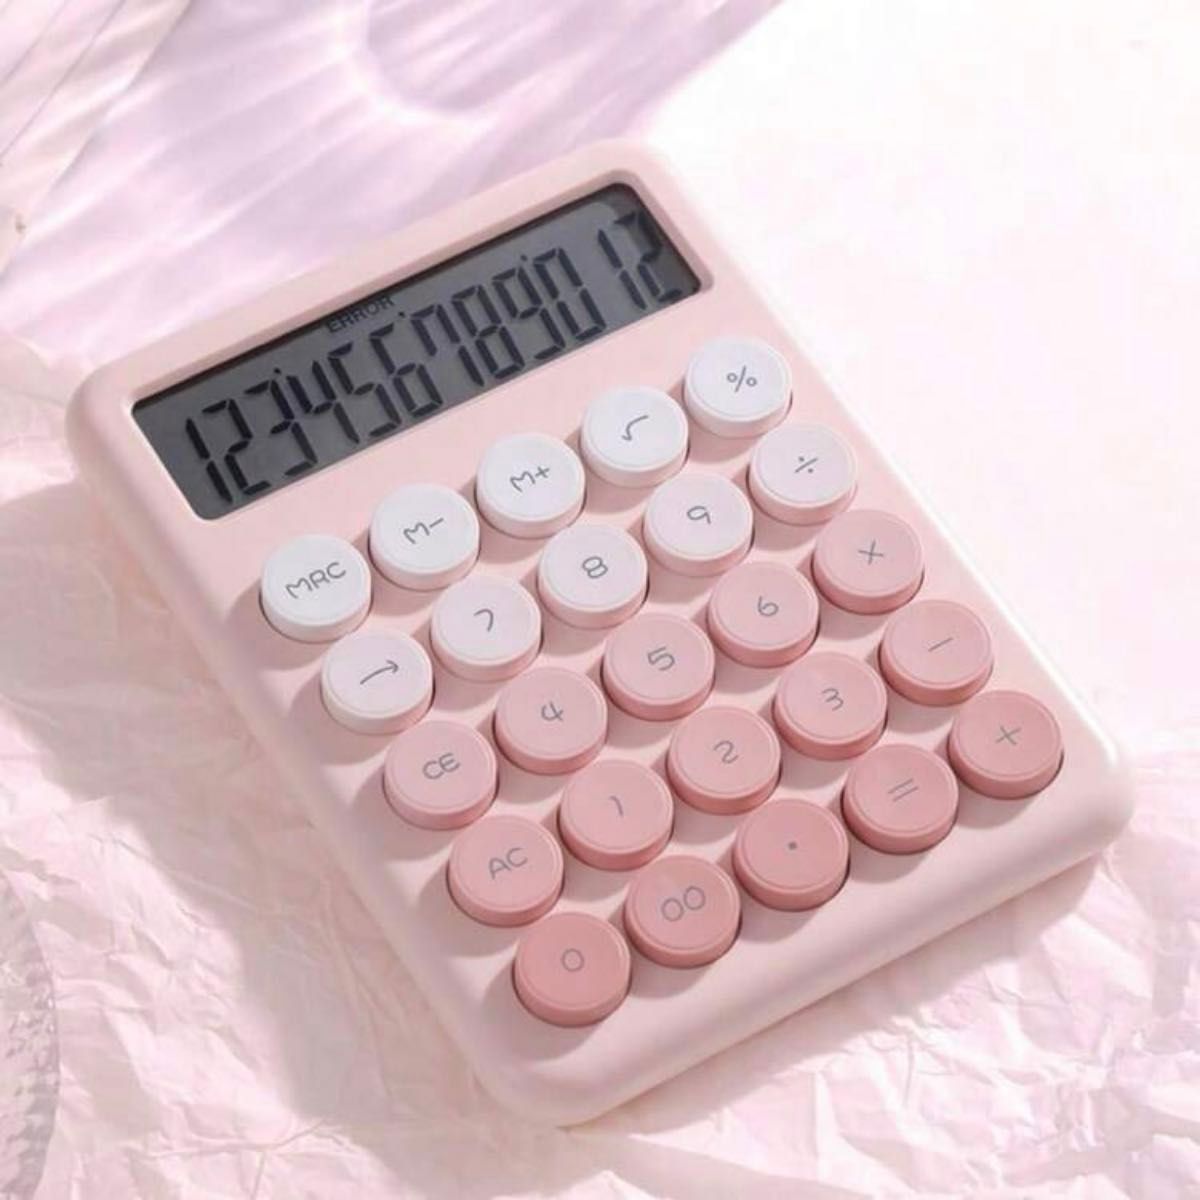 グラデーション丸ボタン電卓 ピンク 12桁表示 カラフル 可愛い電卓 計算機 家計簿 事務用品 店舗用品 おしゃれ かわいい電卓